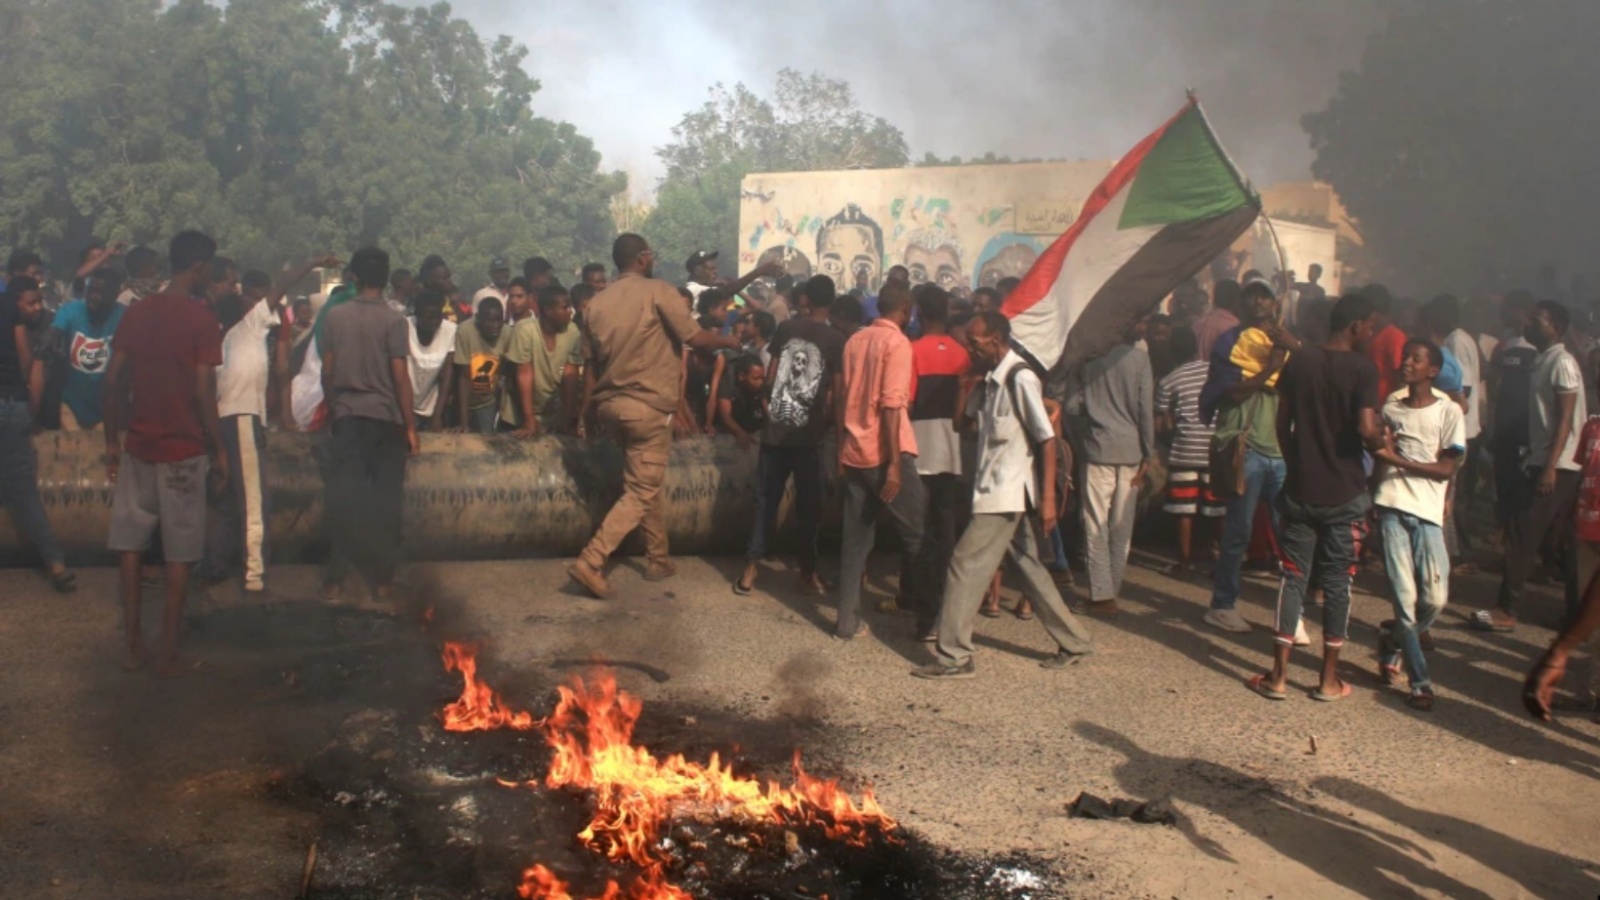 سودانيون يحتجون على انقلاب عسكري أطاح بالانتقال إلى الحكم المدني، في مديرية الشجرة جنوب الخرطوم. في 25 تشرين الأول/أكتوبر 2021.